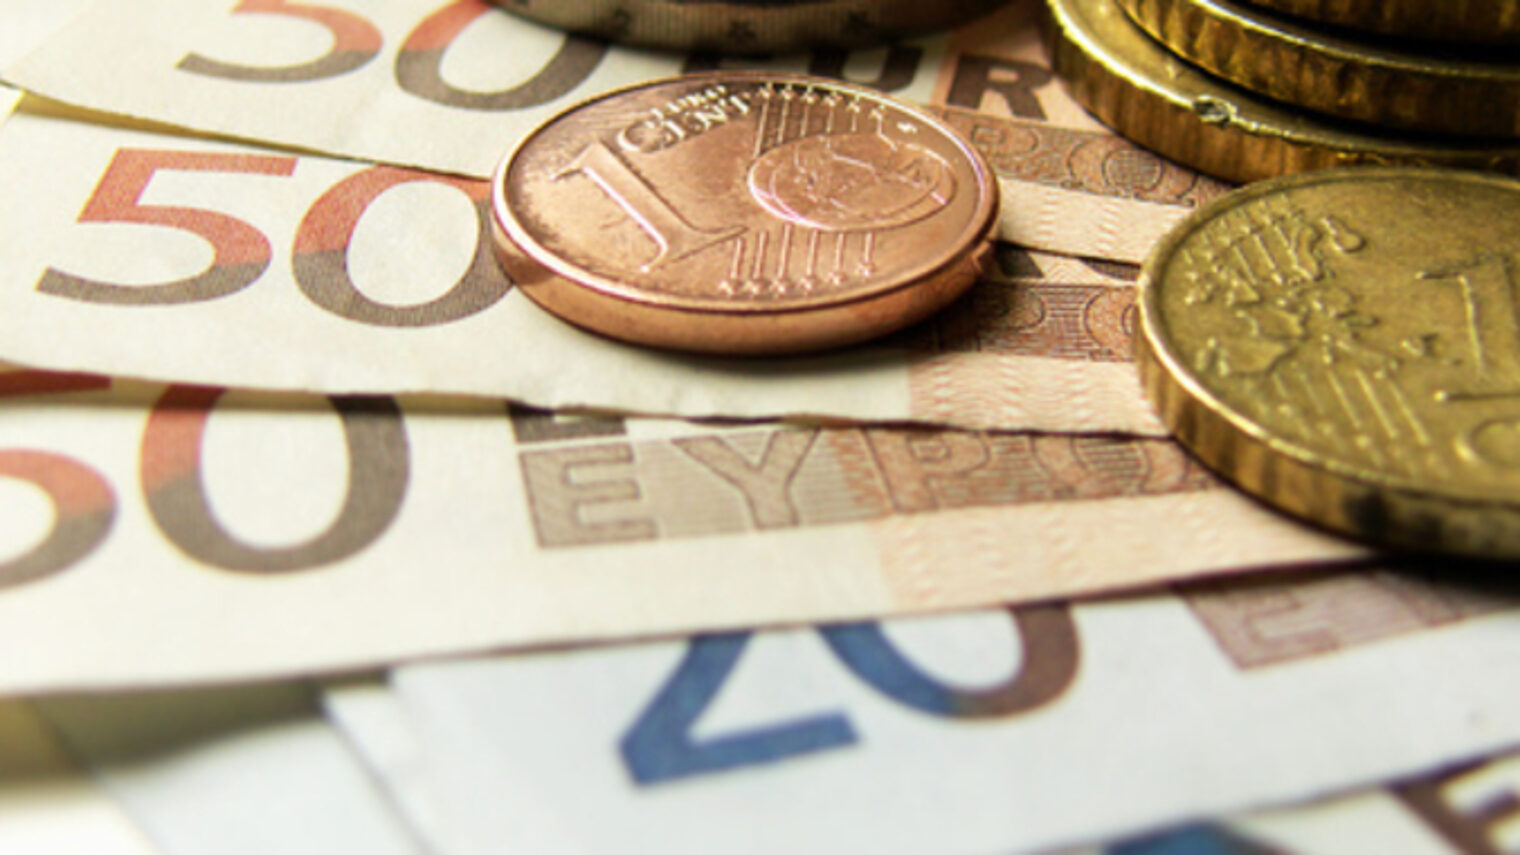 Euro-Geldscheine und Cent-Münzen liegen aufeinander.